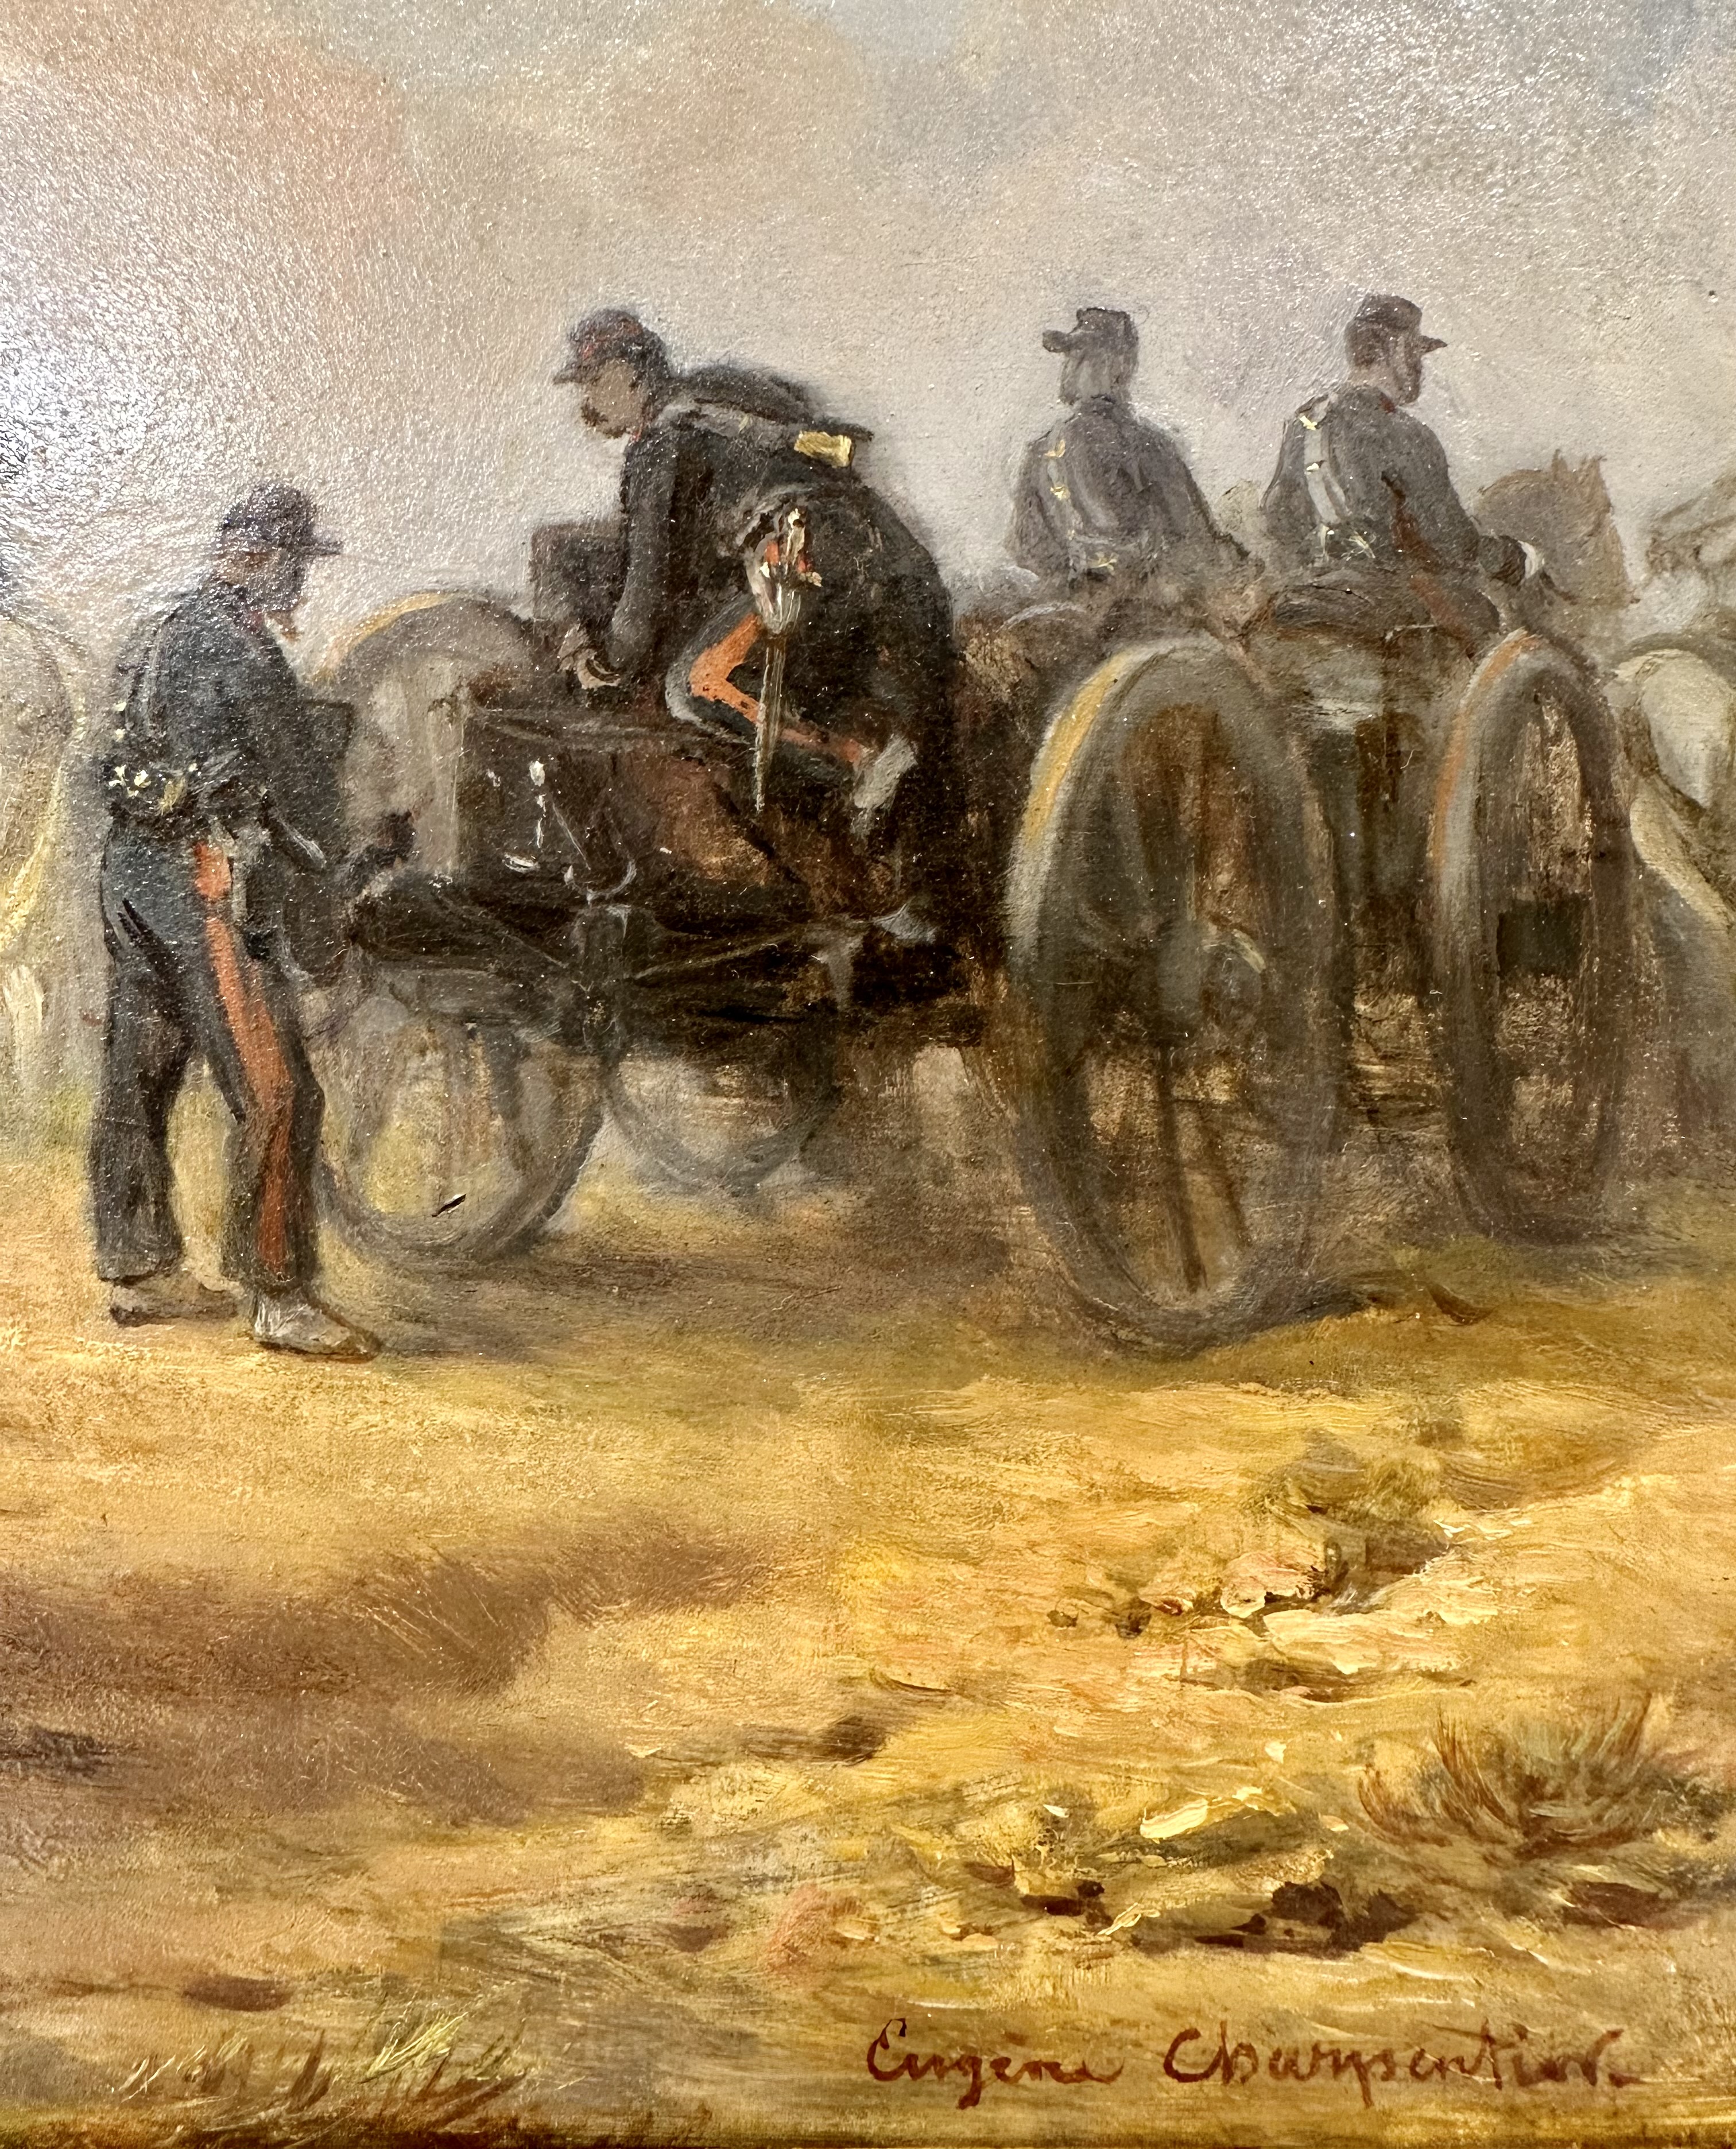 Эжен Шарпантье, "Артиллерия в действии", сер. XIX века 